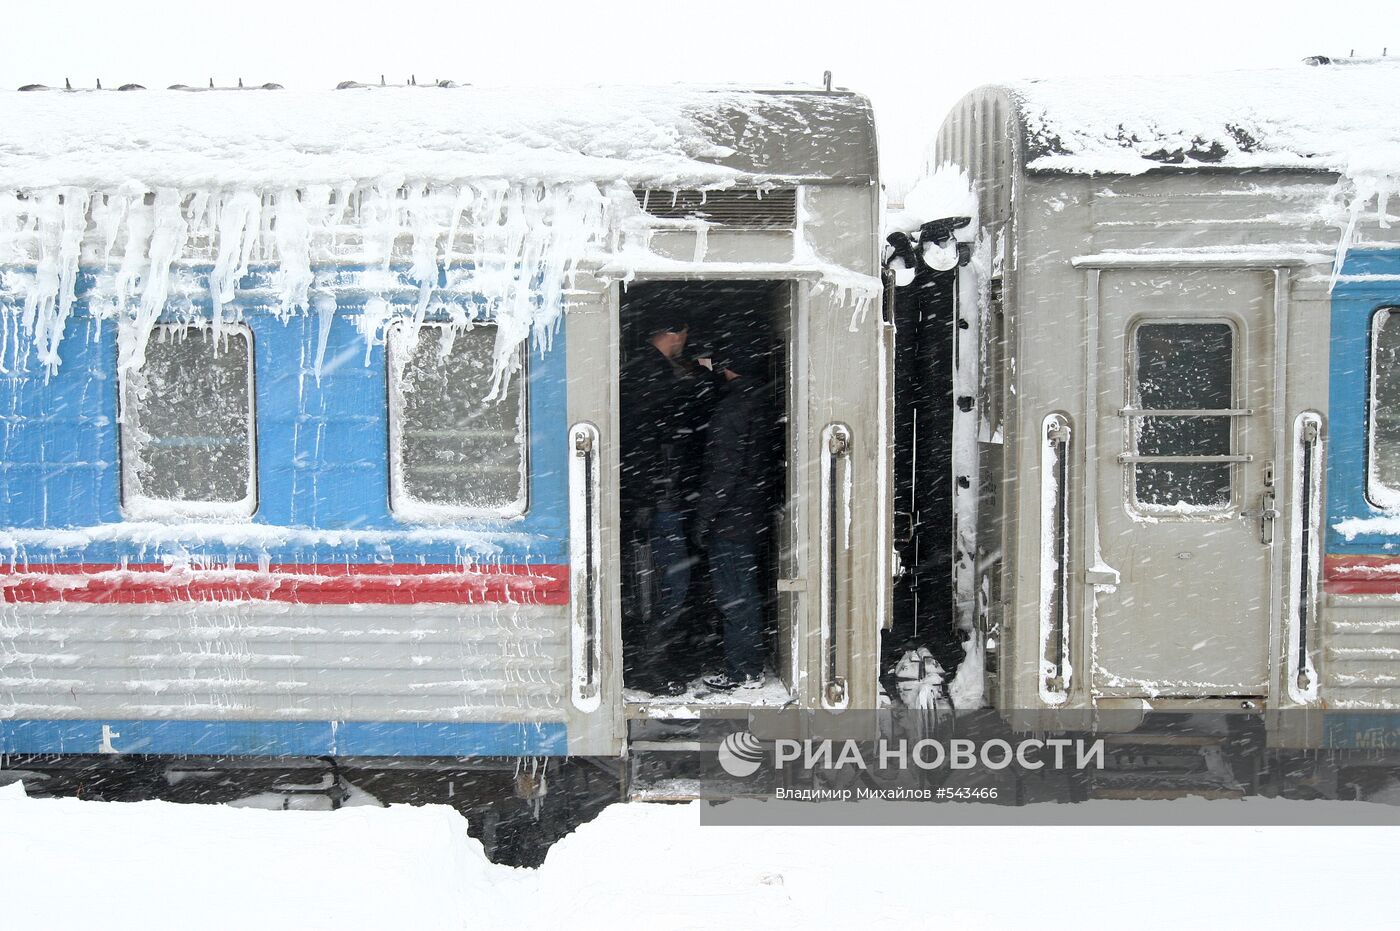 Спасательный поезд на железнодорожной станции "Взморье"